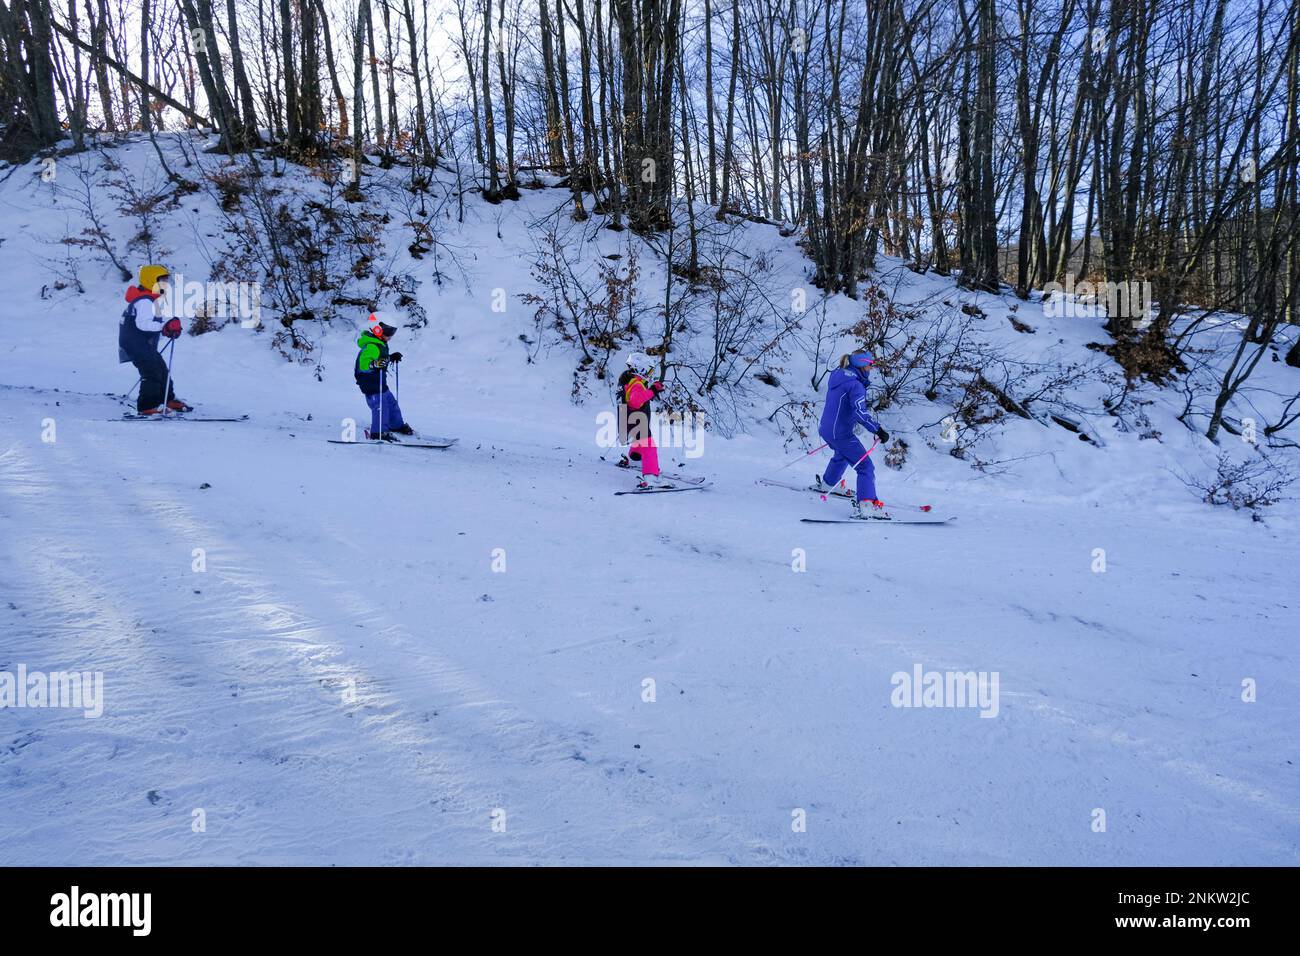 Kinder in bunten Skianzügen, die in den schneebedeckten Bergen über Bäume und Sonnenlicht Ski fahren. Stockfoto